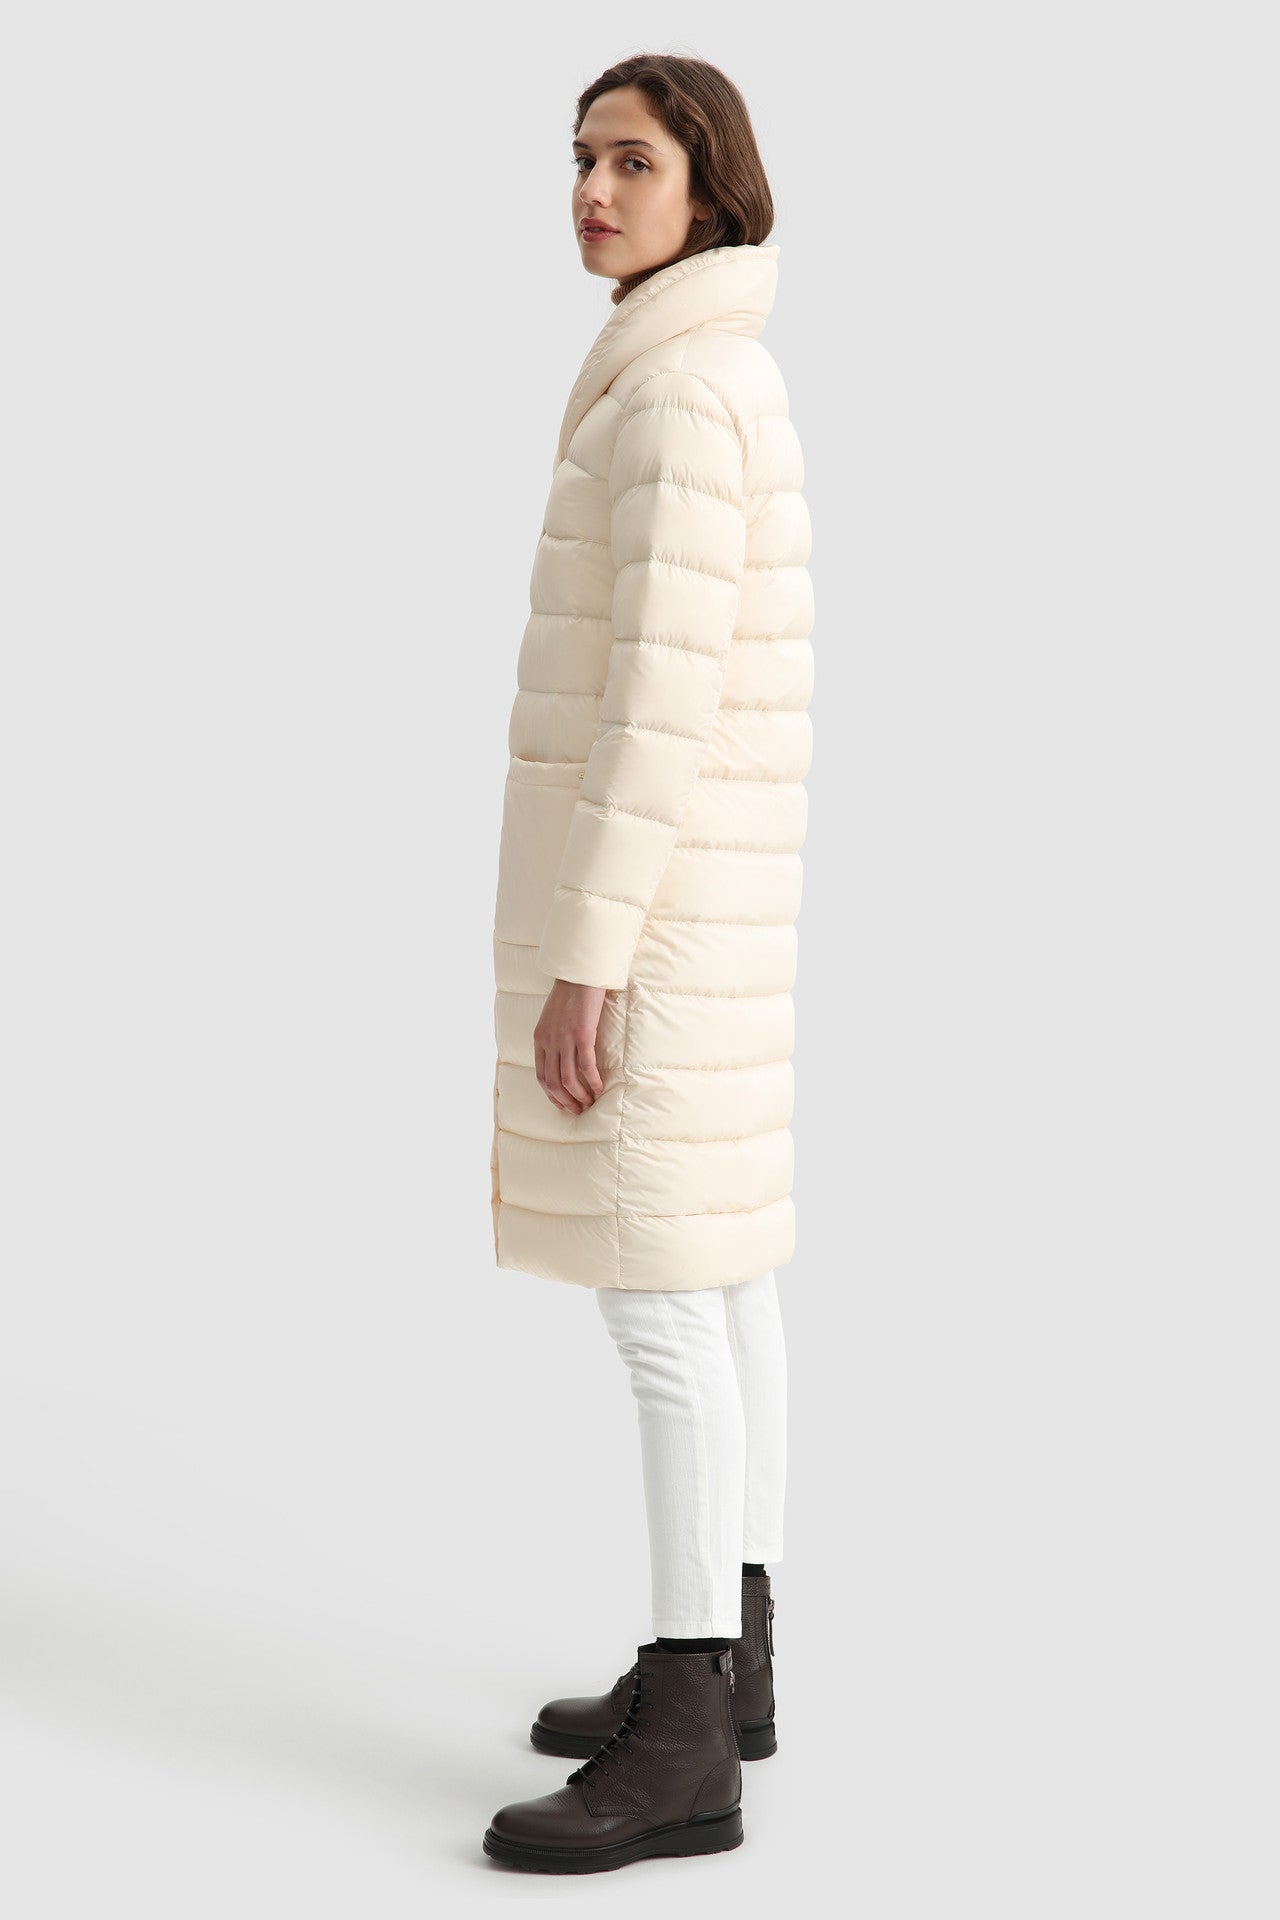 Piumino Woolrich Ellis Coat / Beige - Ideal Moda